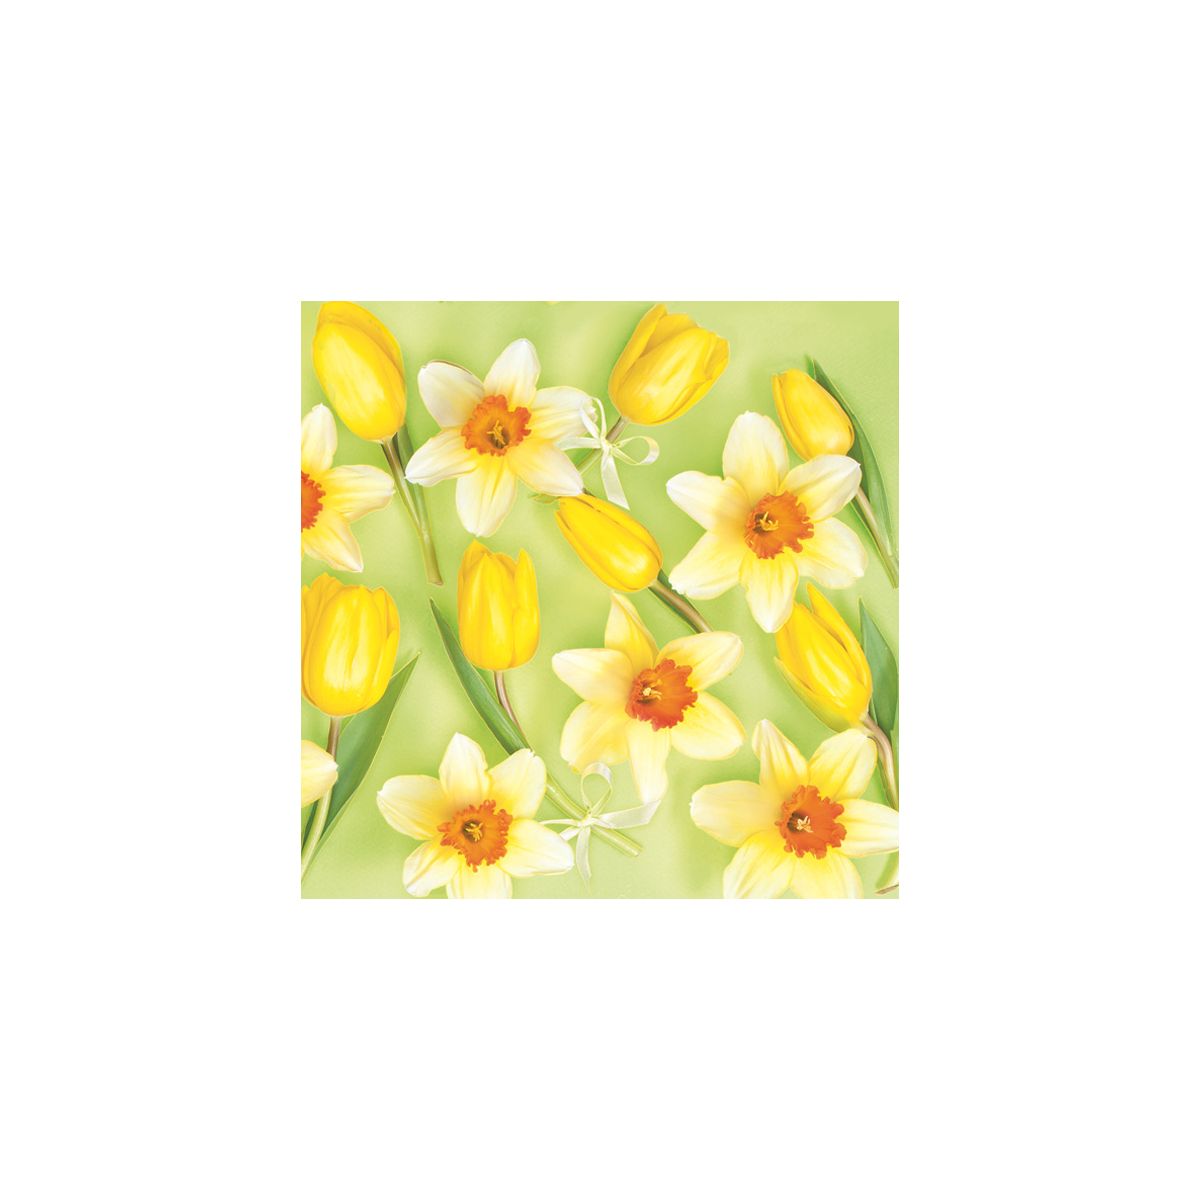 Serwetki Wiosna mix bibuła [mm:] 330x330 Pol-mak (SL Wi)